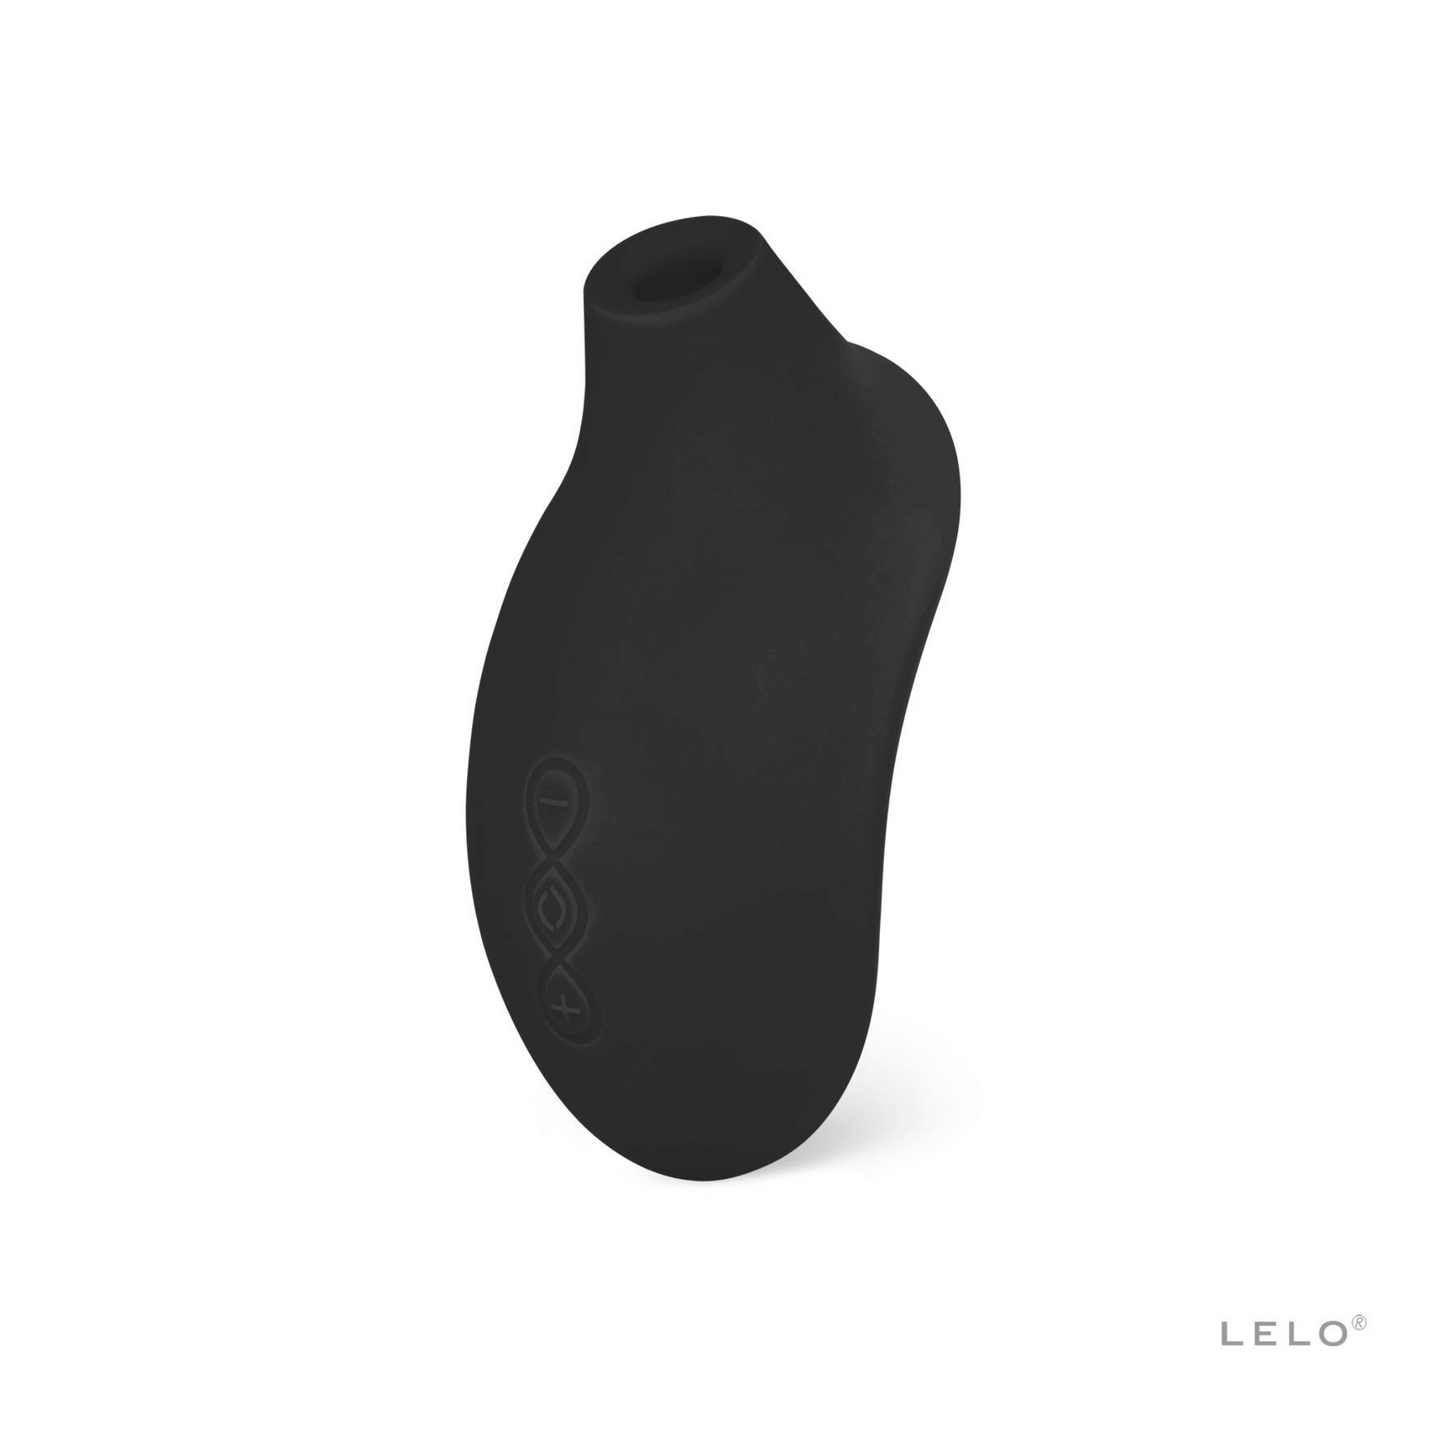 Stimulateur Sona 2 de Lelo en noir mat, design discret et élégant, disponible sur OhMyGodz.fr pour une expérience sensuelle révolutionnaire.